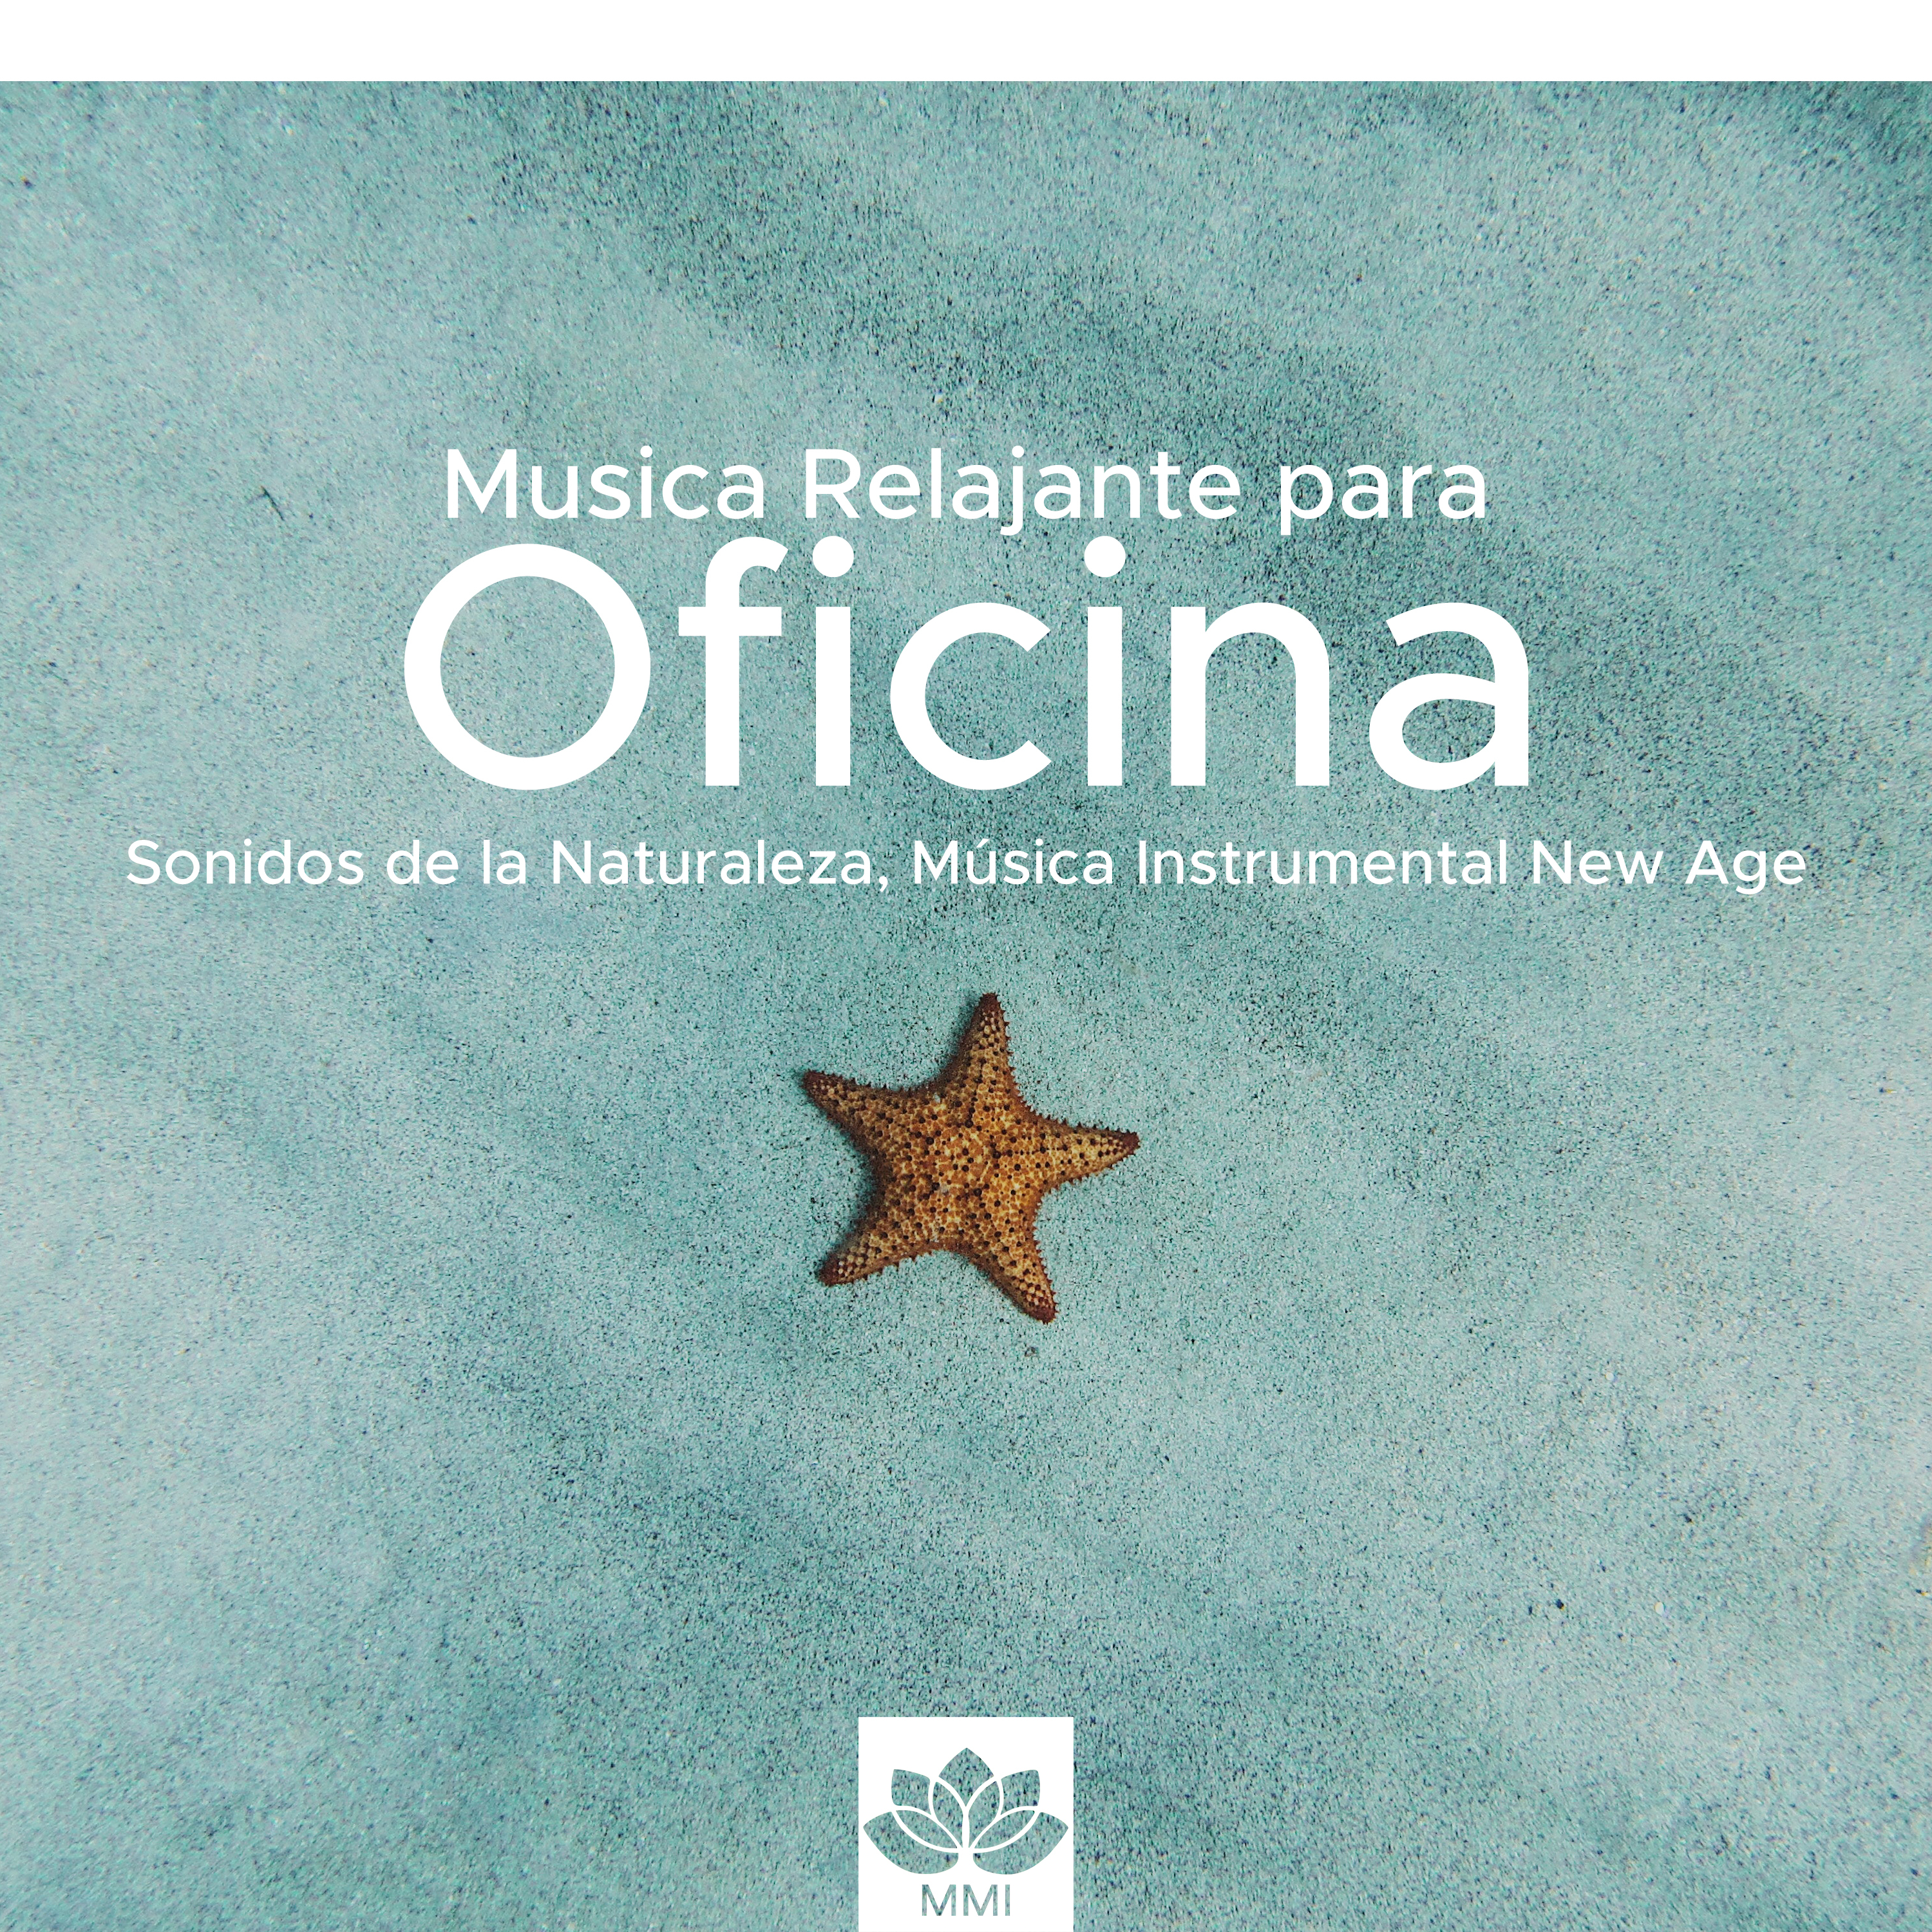 Musica Relajante para Oficina - Sonidos de la Naturaleza, Música Instrumental New Age